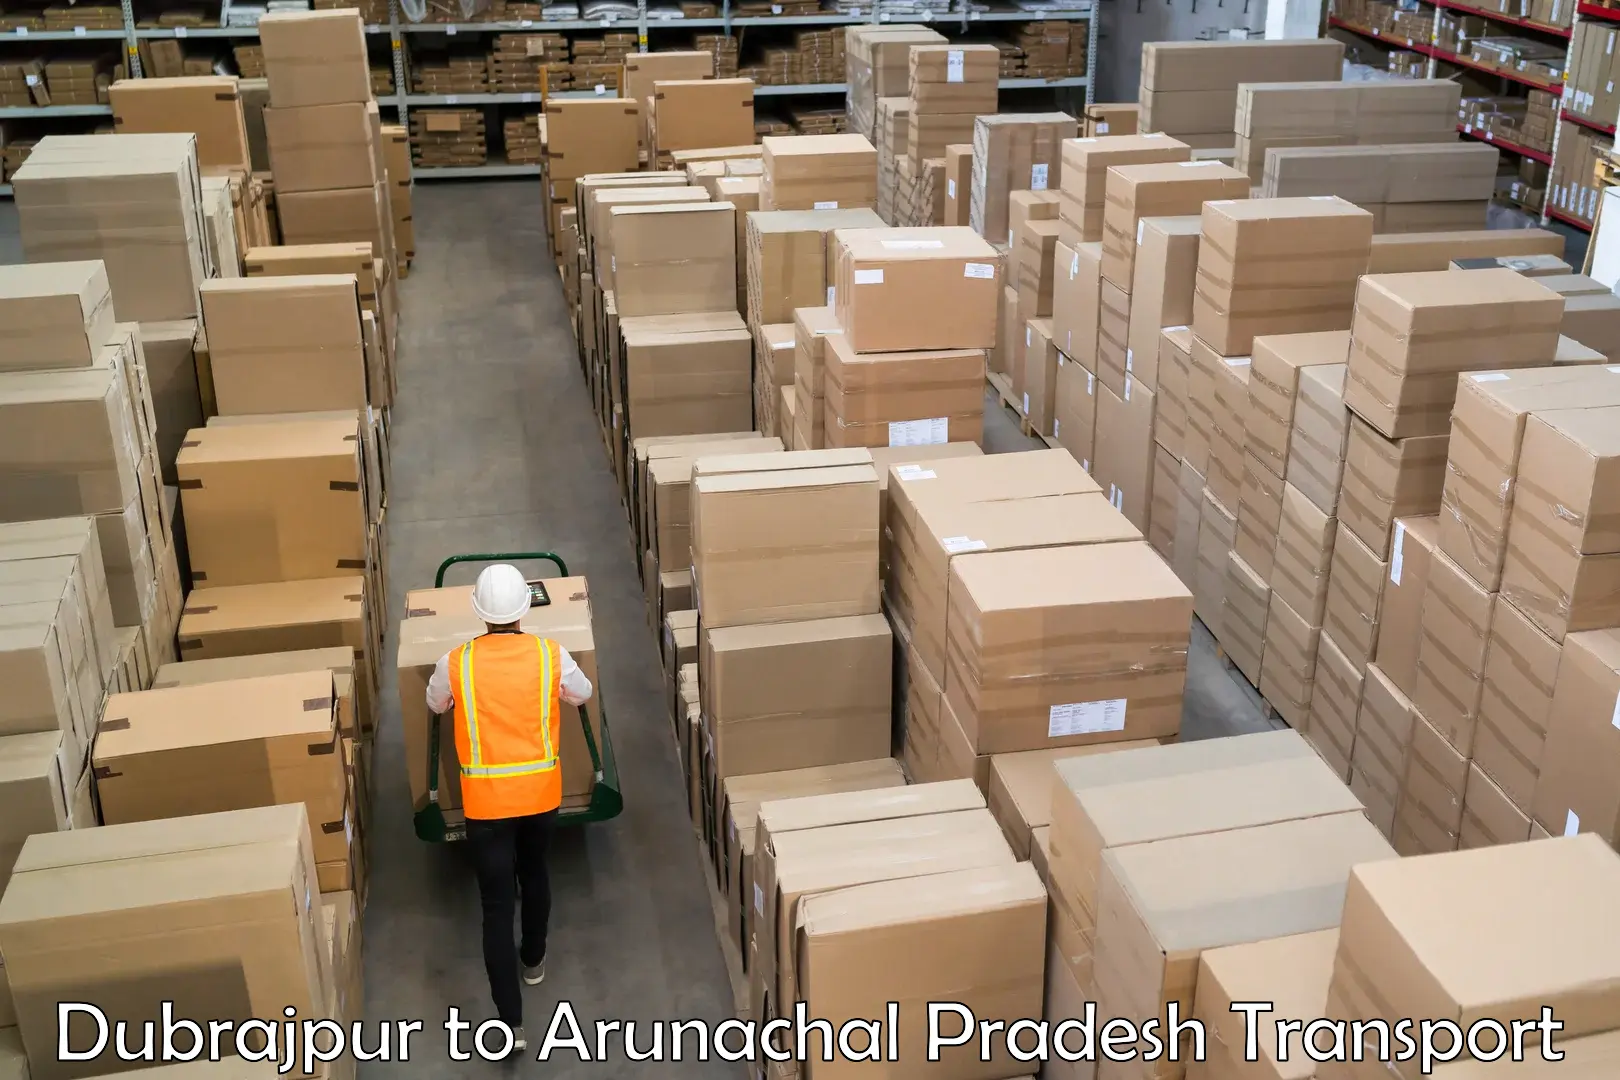 Container transport service Dubrajpur to Arunachal Pradesh